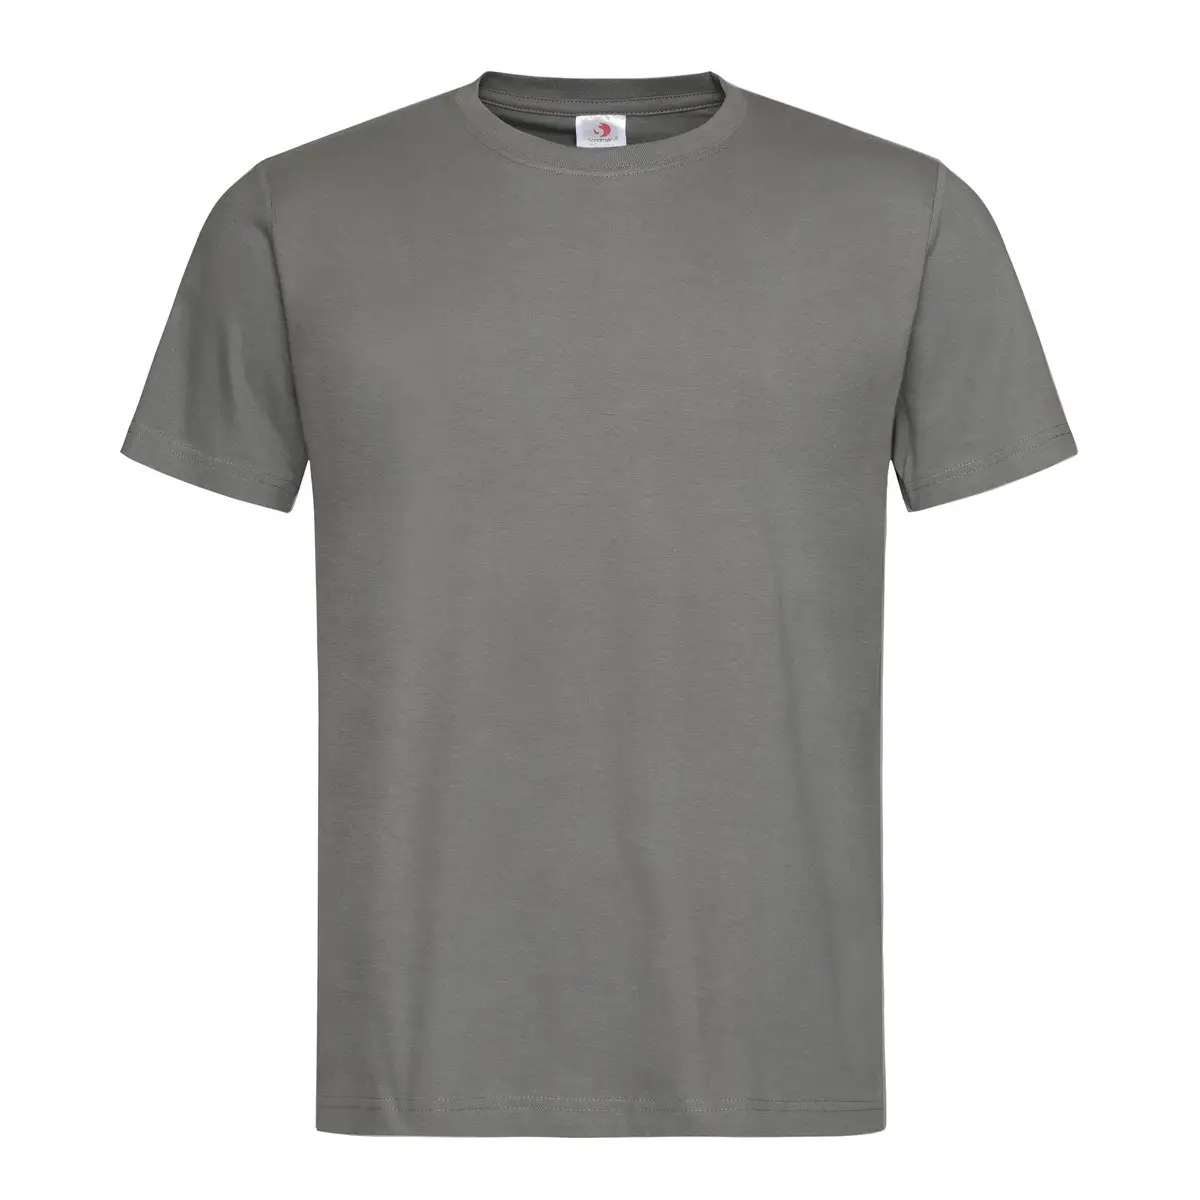 T-Shirt Unisex Manica Corta Cotone Personalizzata - Stedman